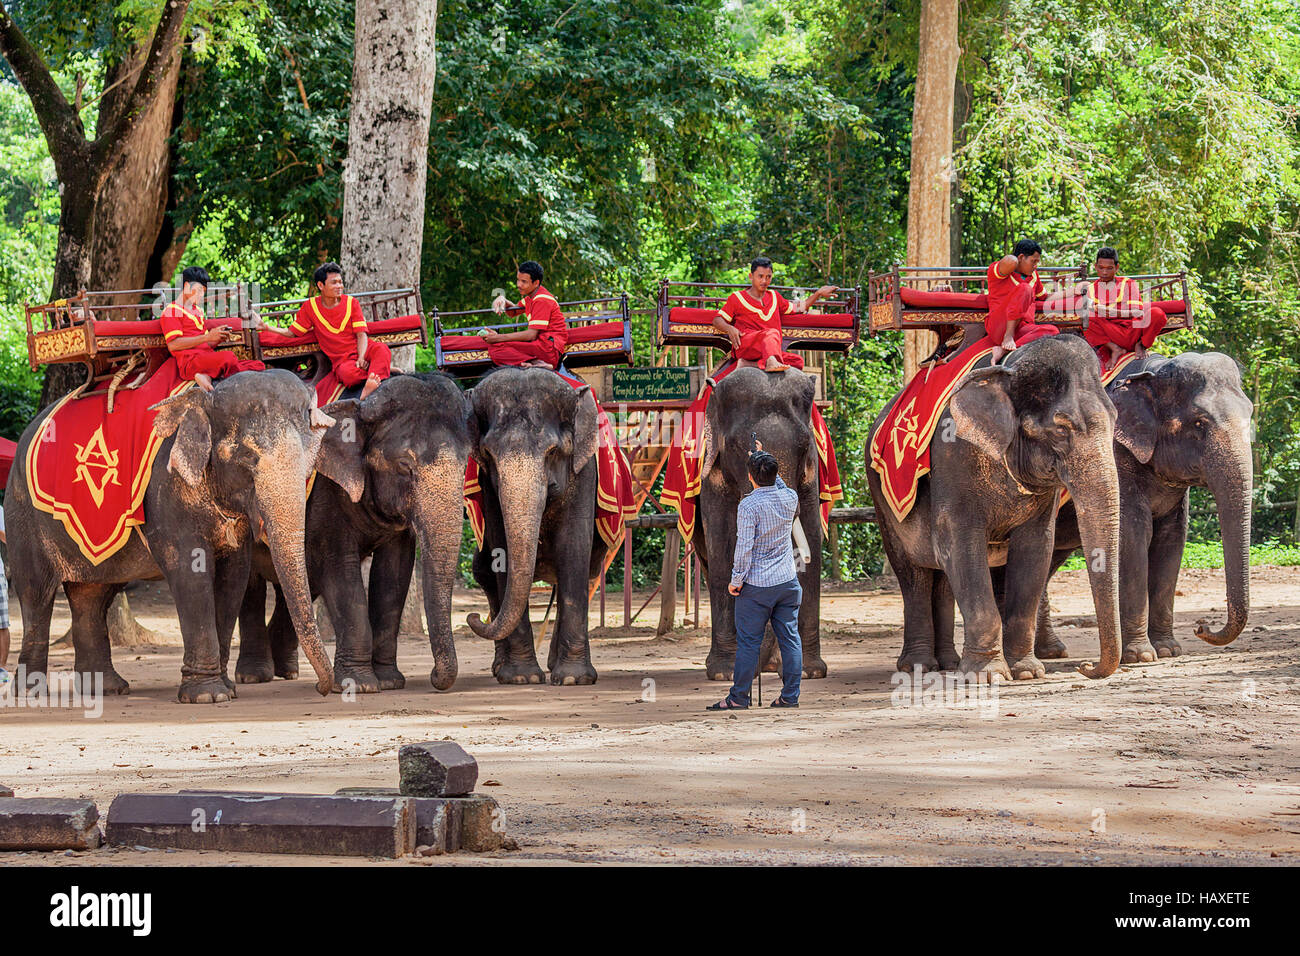 Los elefantes asiáticos utilizados para llevar a los turistas en un viaje alrededor de Angkor Thom, tomar un descanso bajo los árboles en Siem Reap, Reino de Camboya. Foto de stock